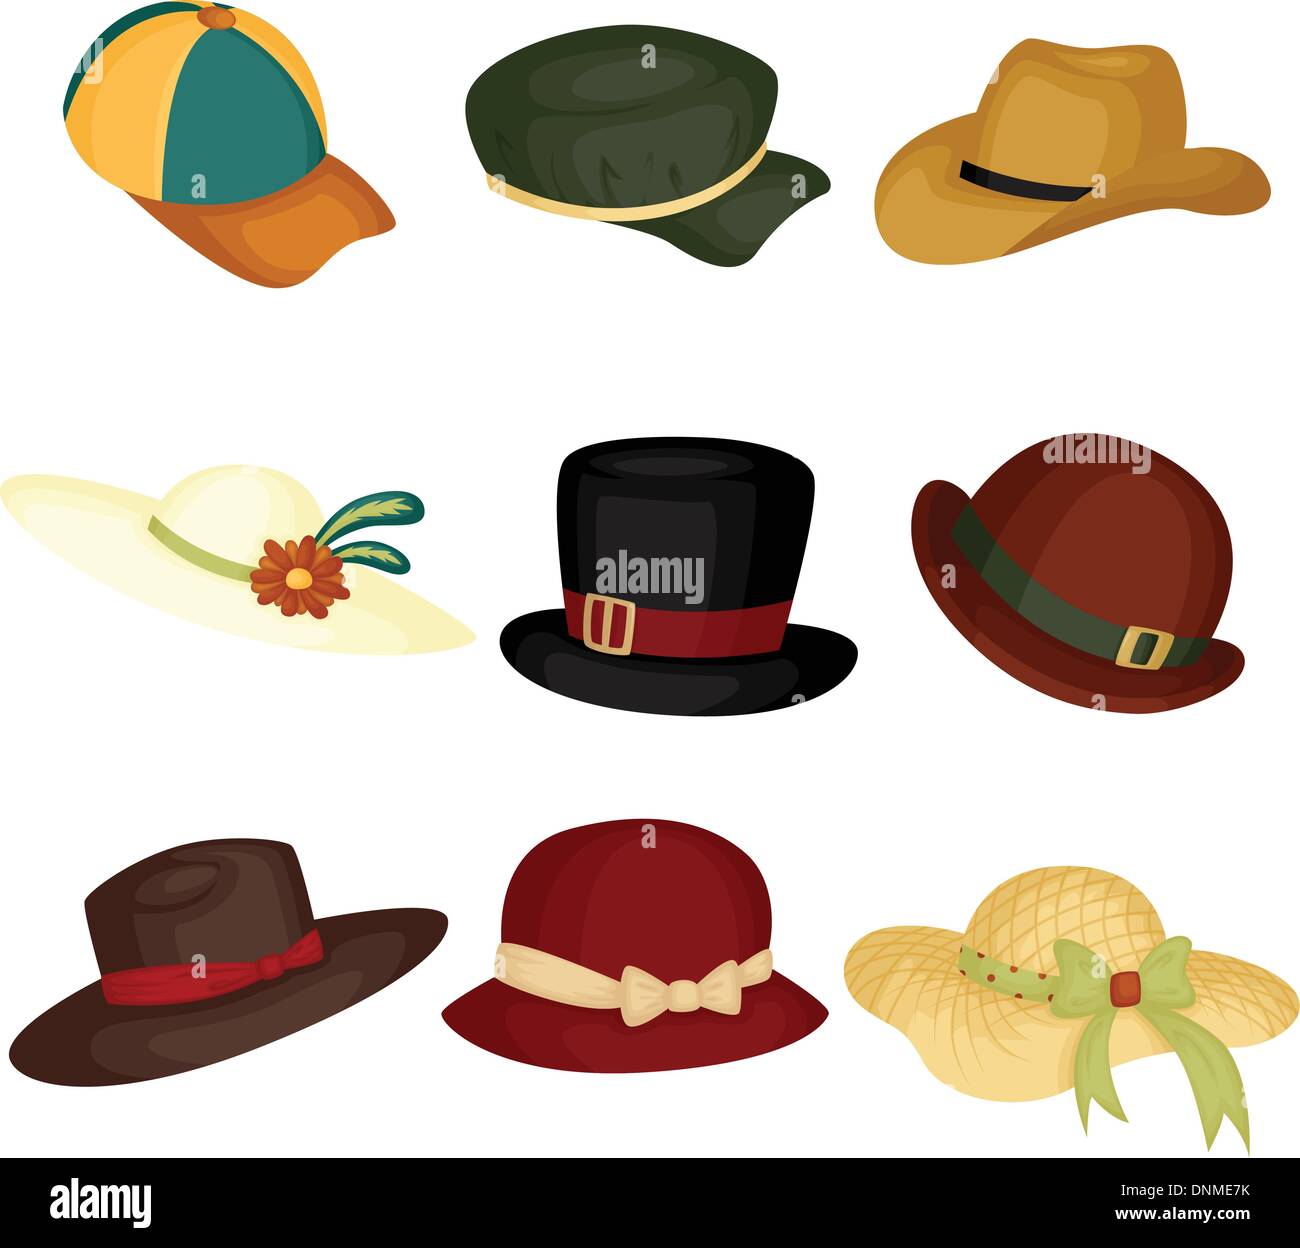 Un vecteur illustration de différents types de chapeaux Image Vectorielle  Stock - Alamy